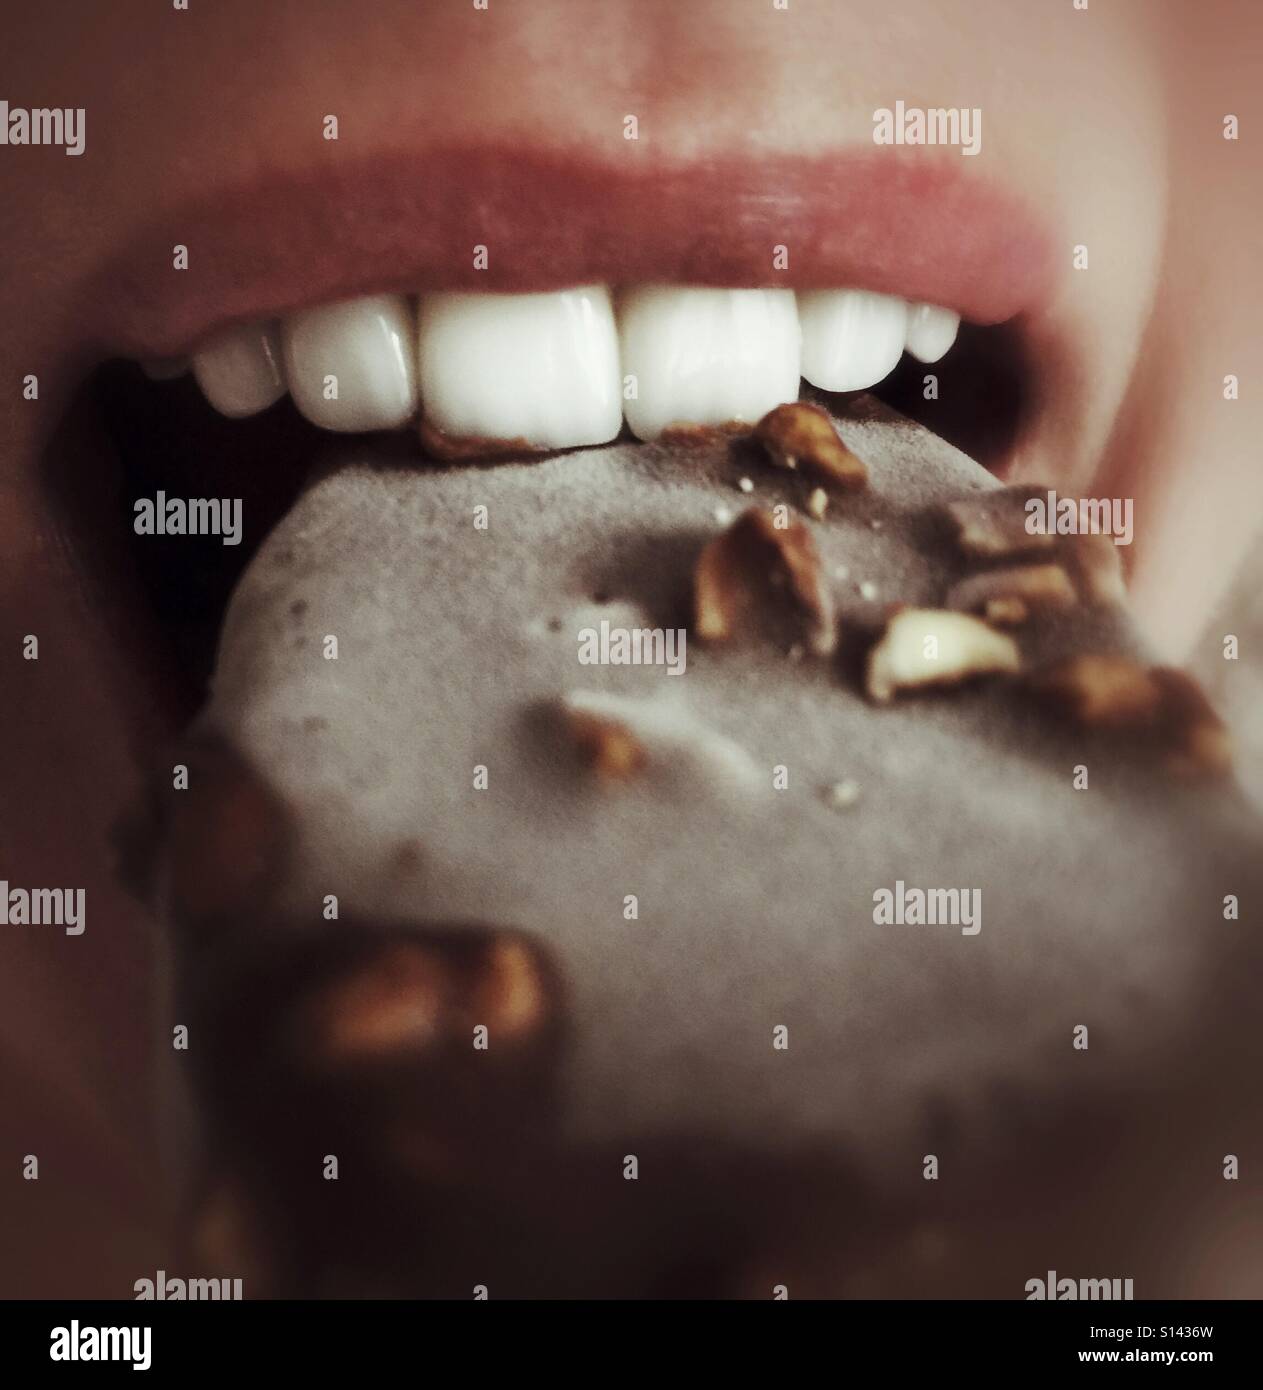 Zähne beißen in eine Nuss und Schokolade bedeckten Eis-Bar. Stockfoto